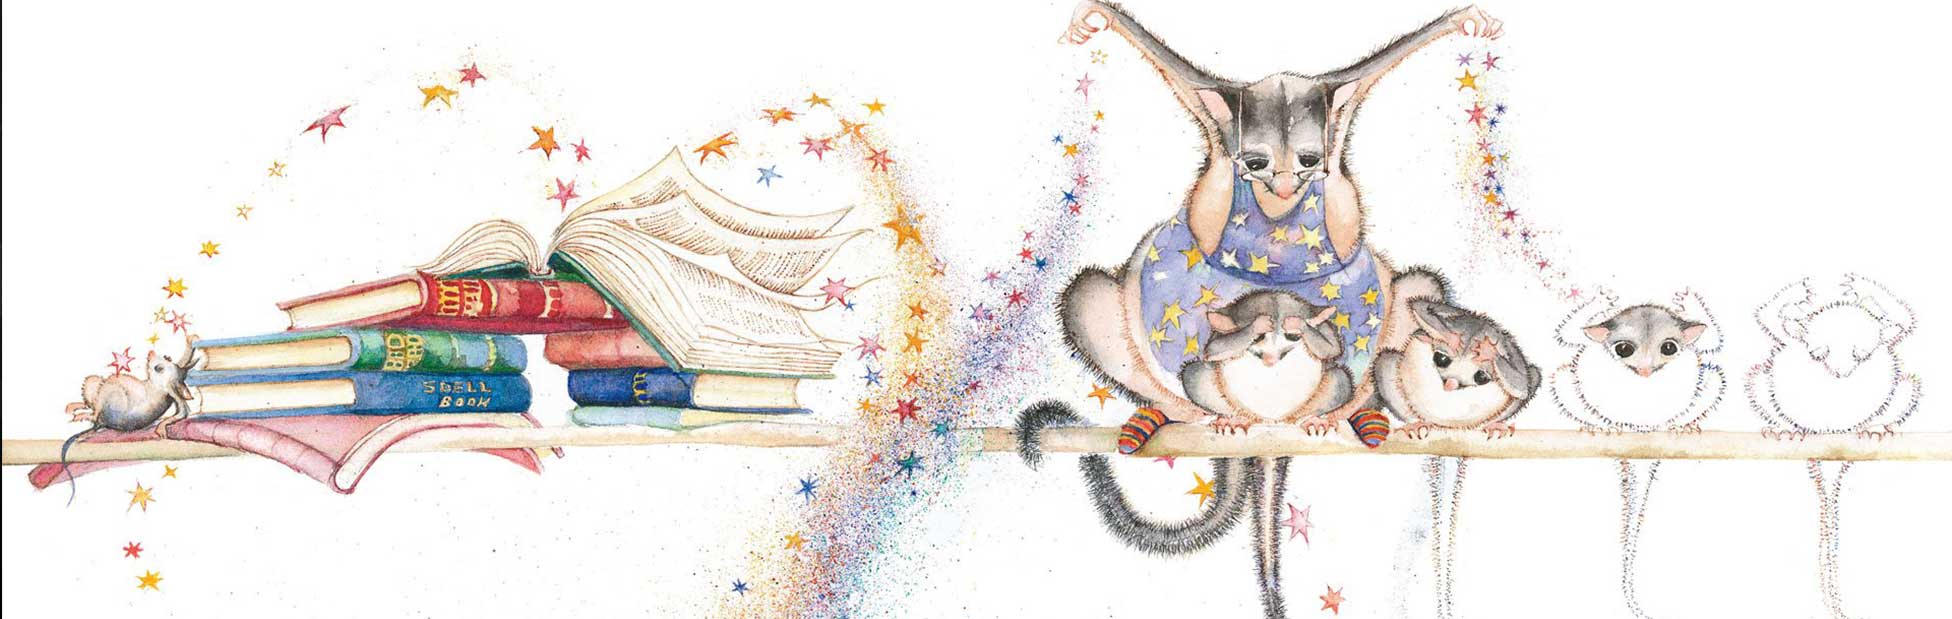 Possum Magic cover illustration